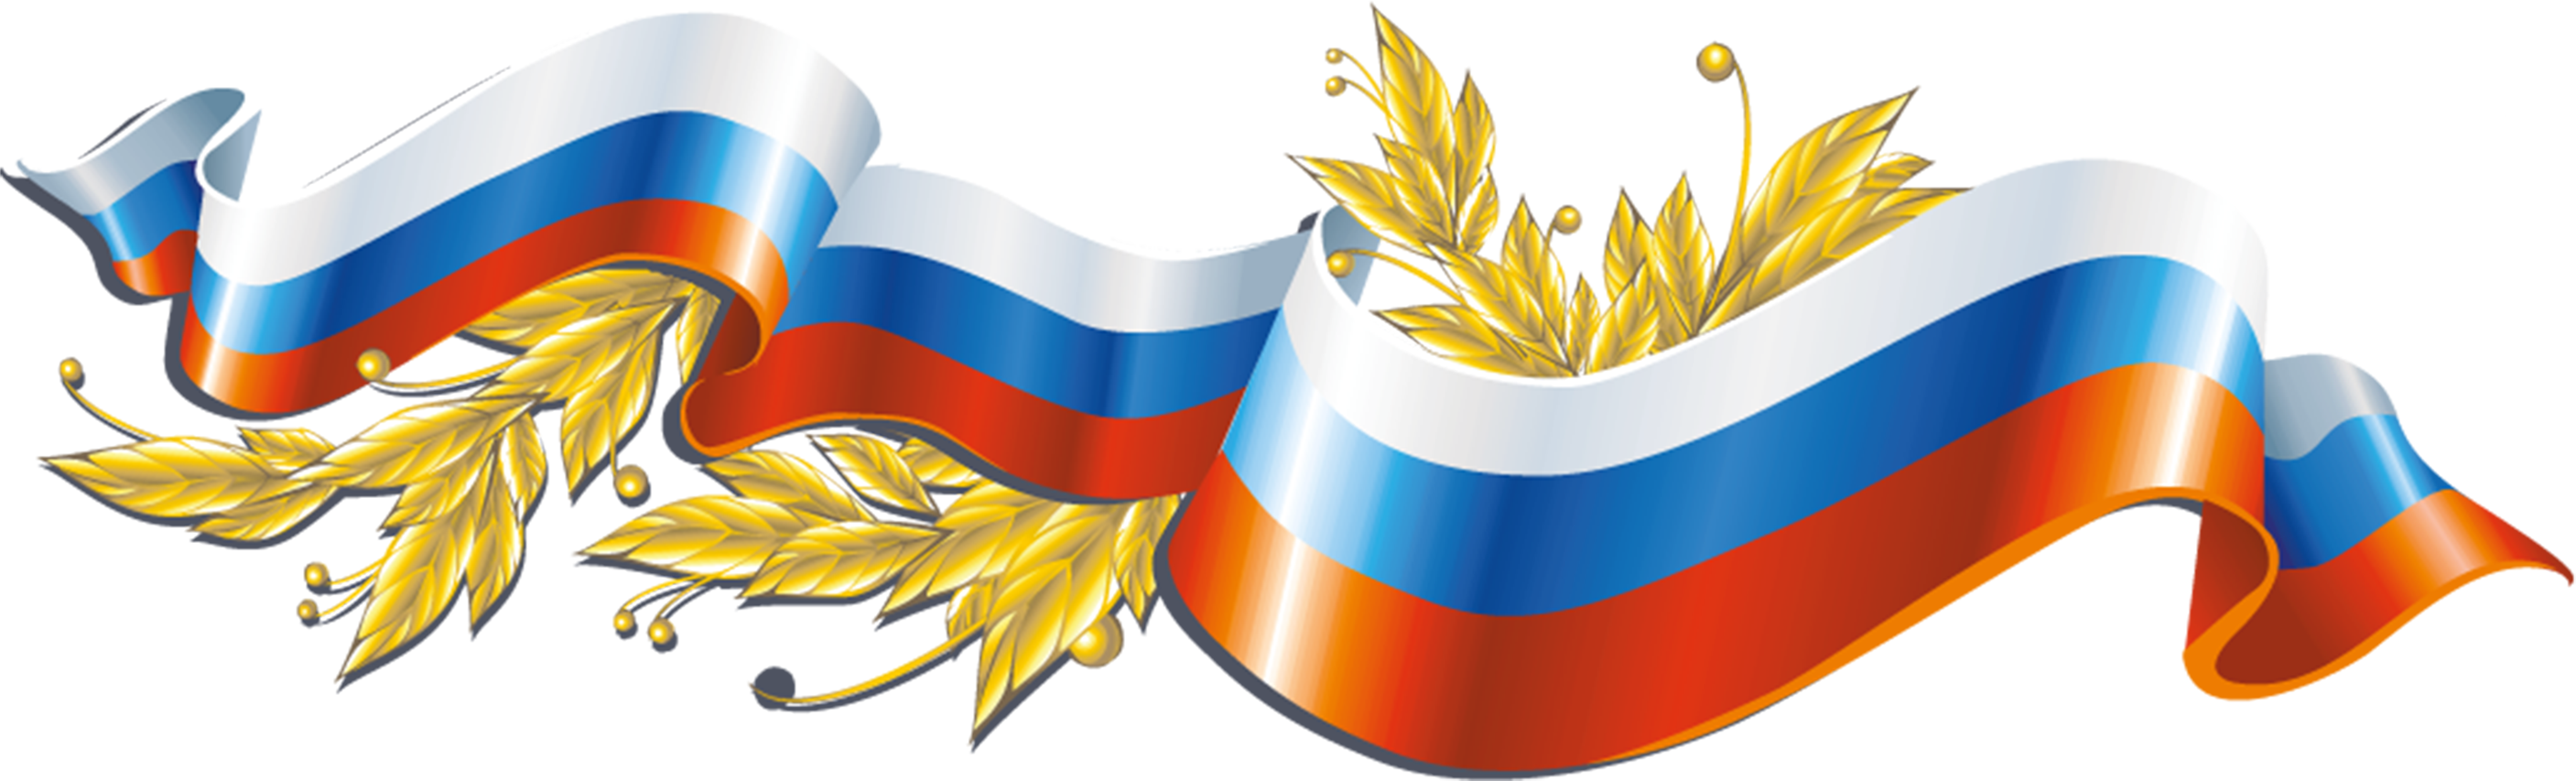 Фон флаг россии шаблон